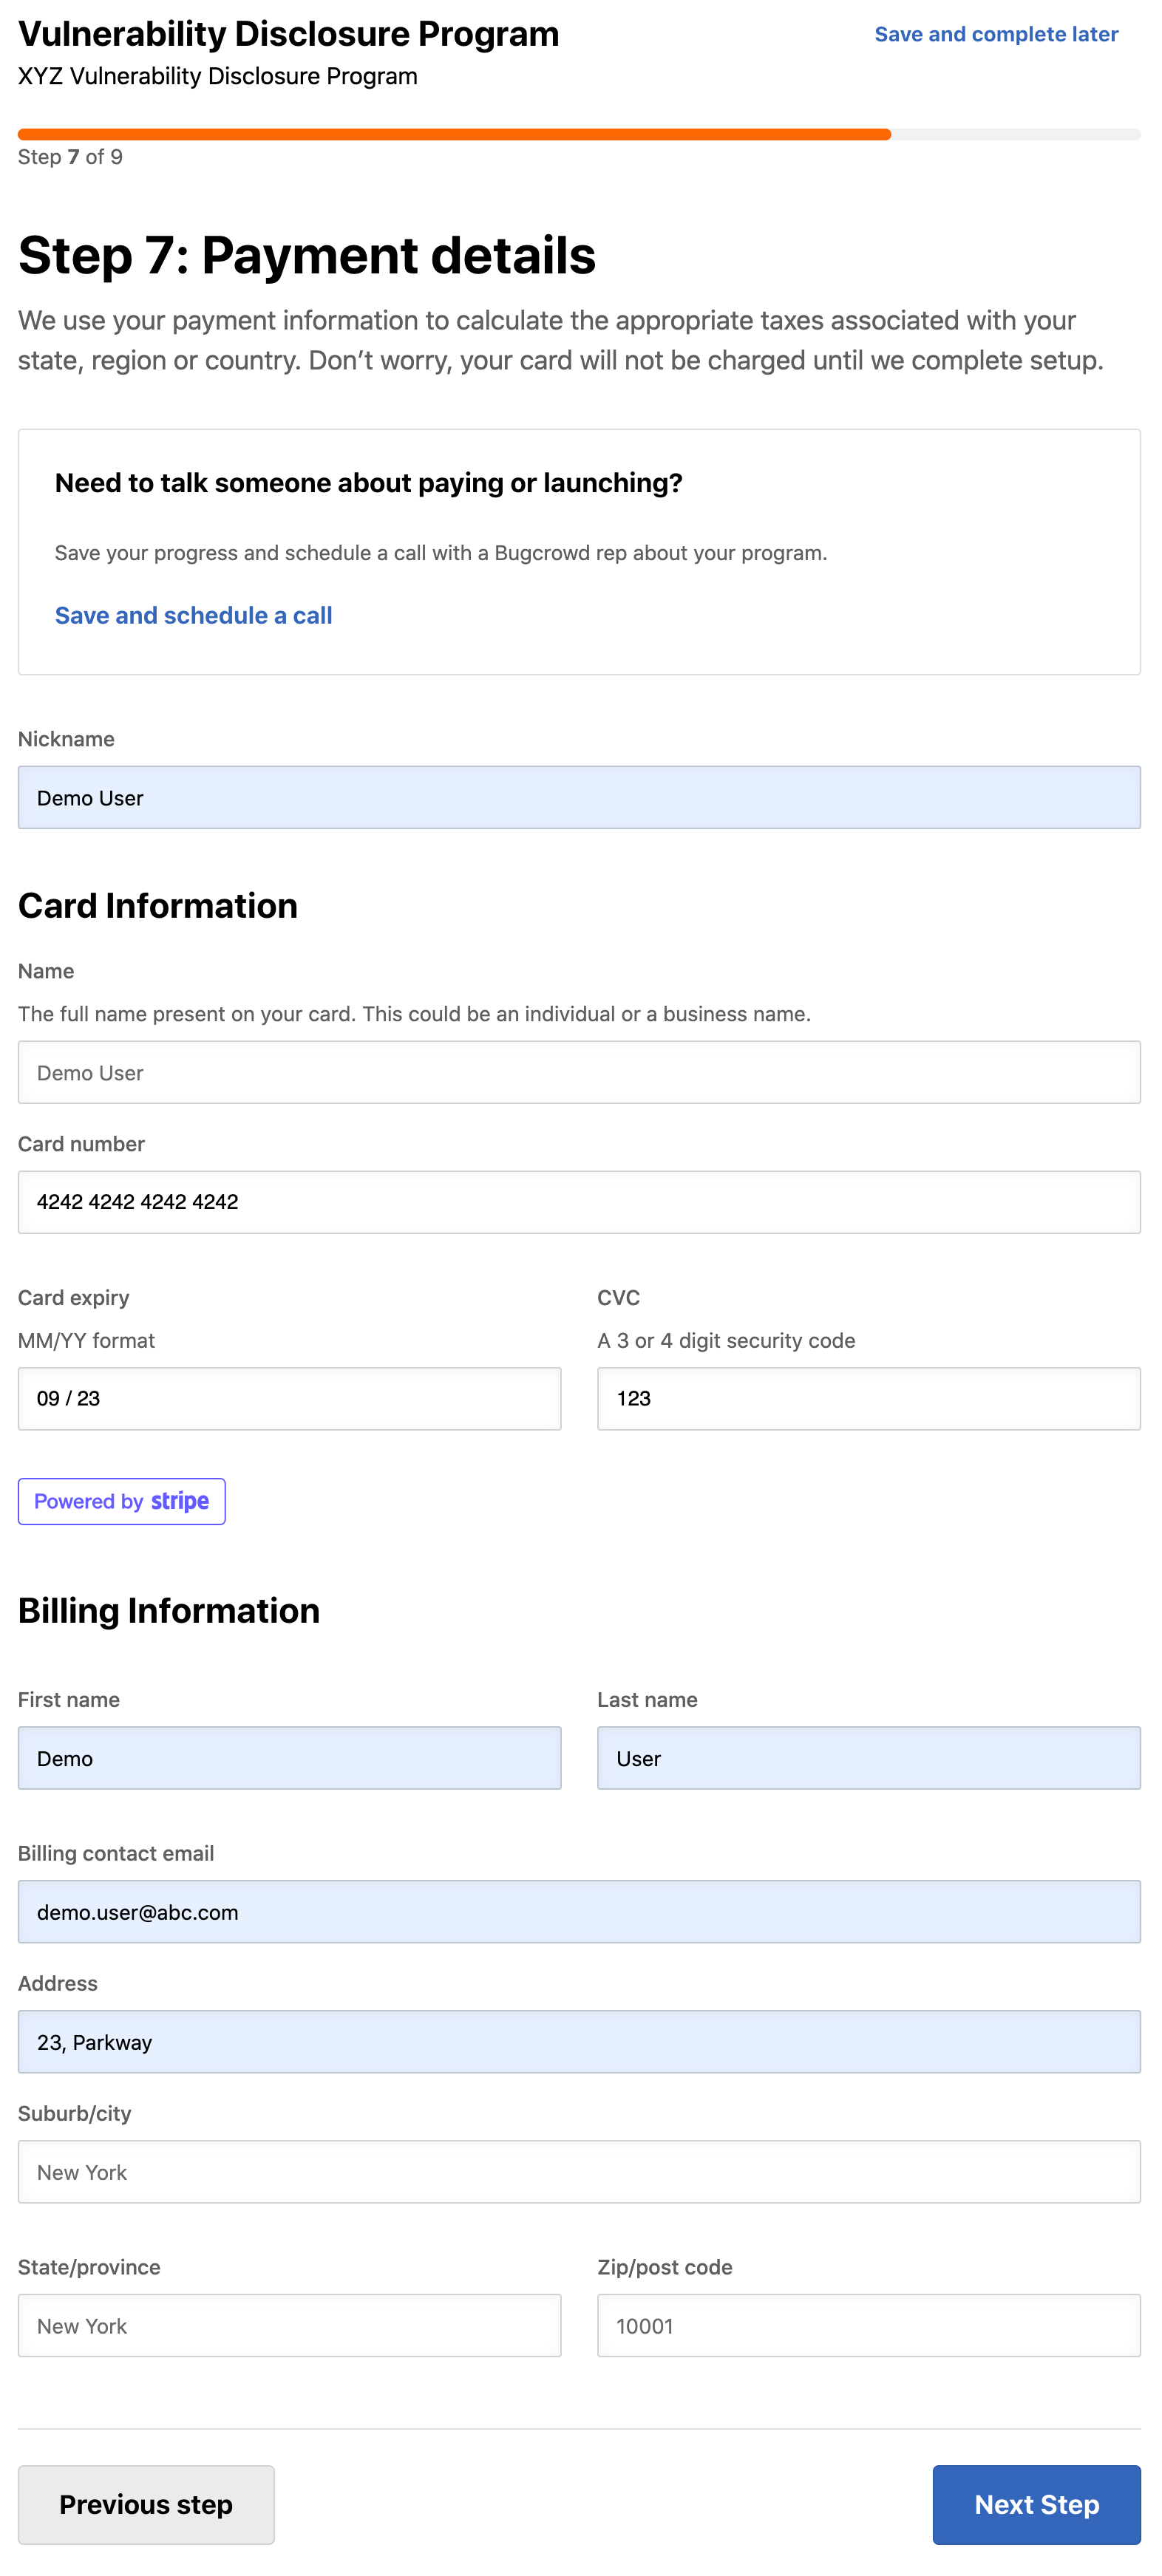 step-7a-card-billing-details